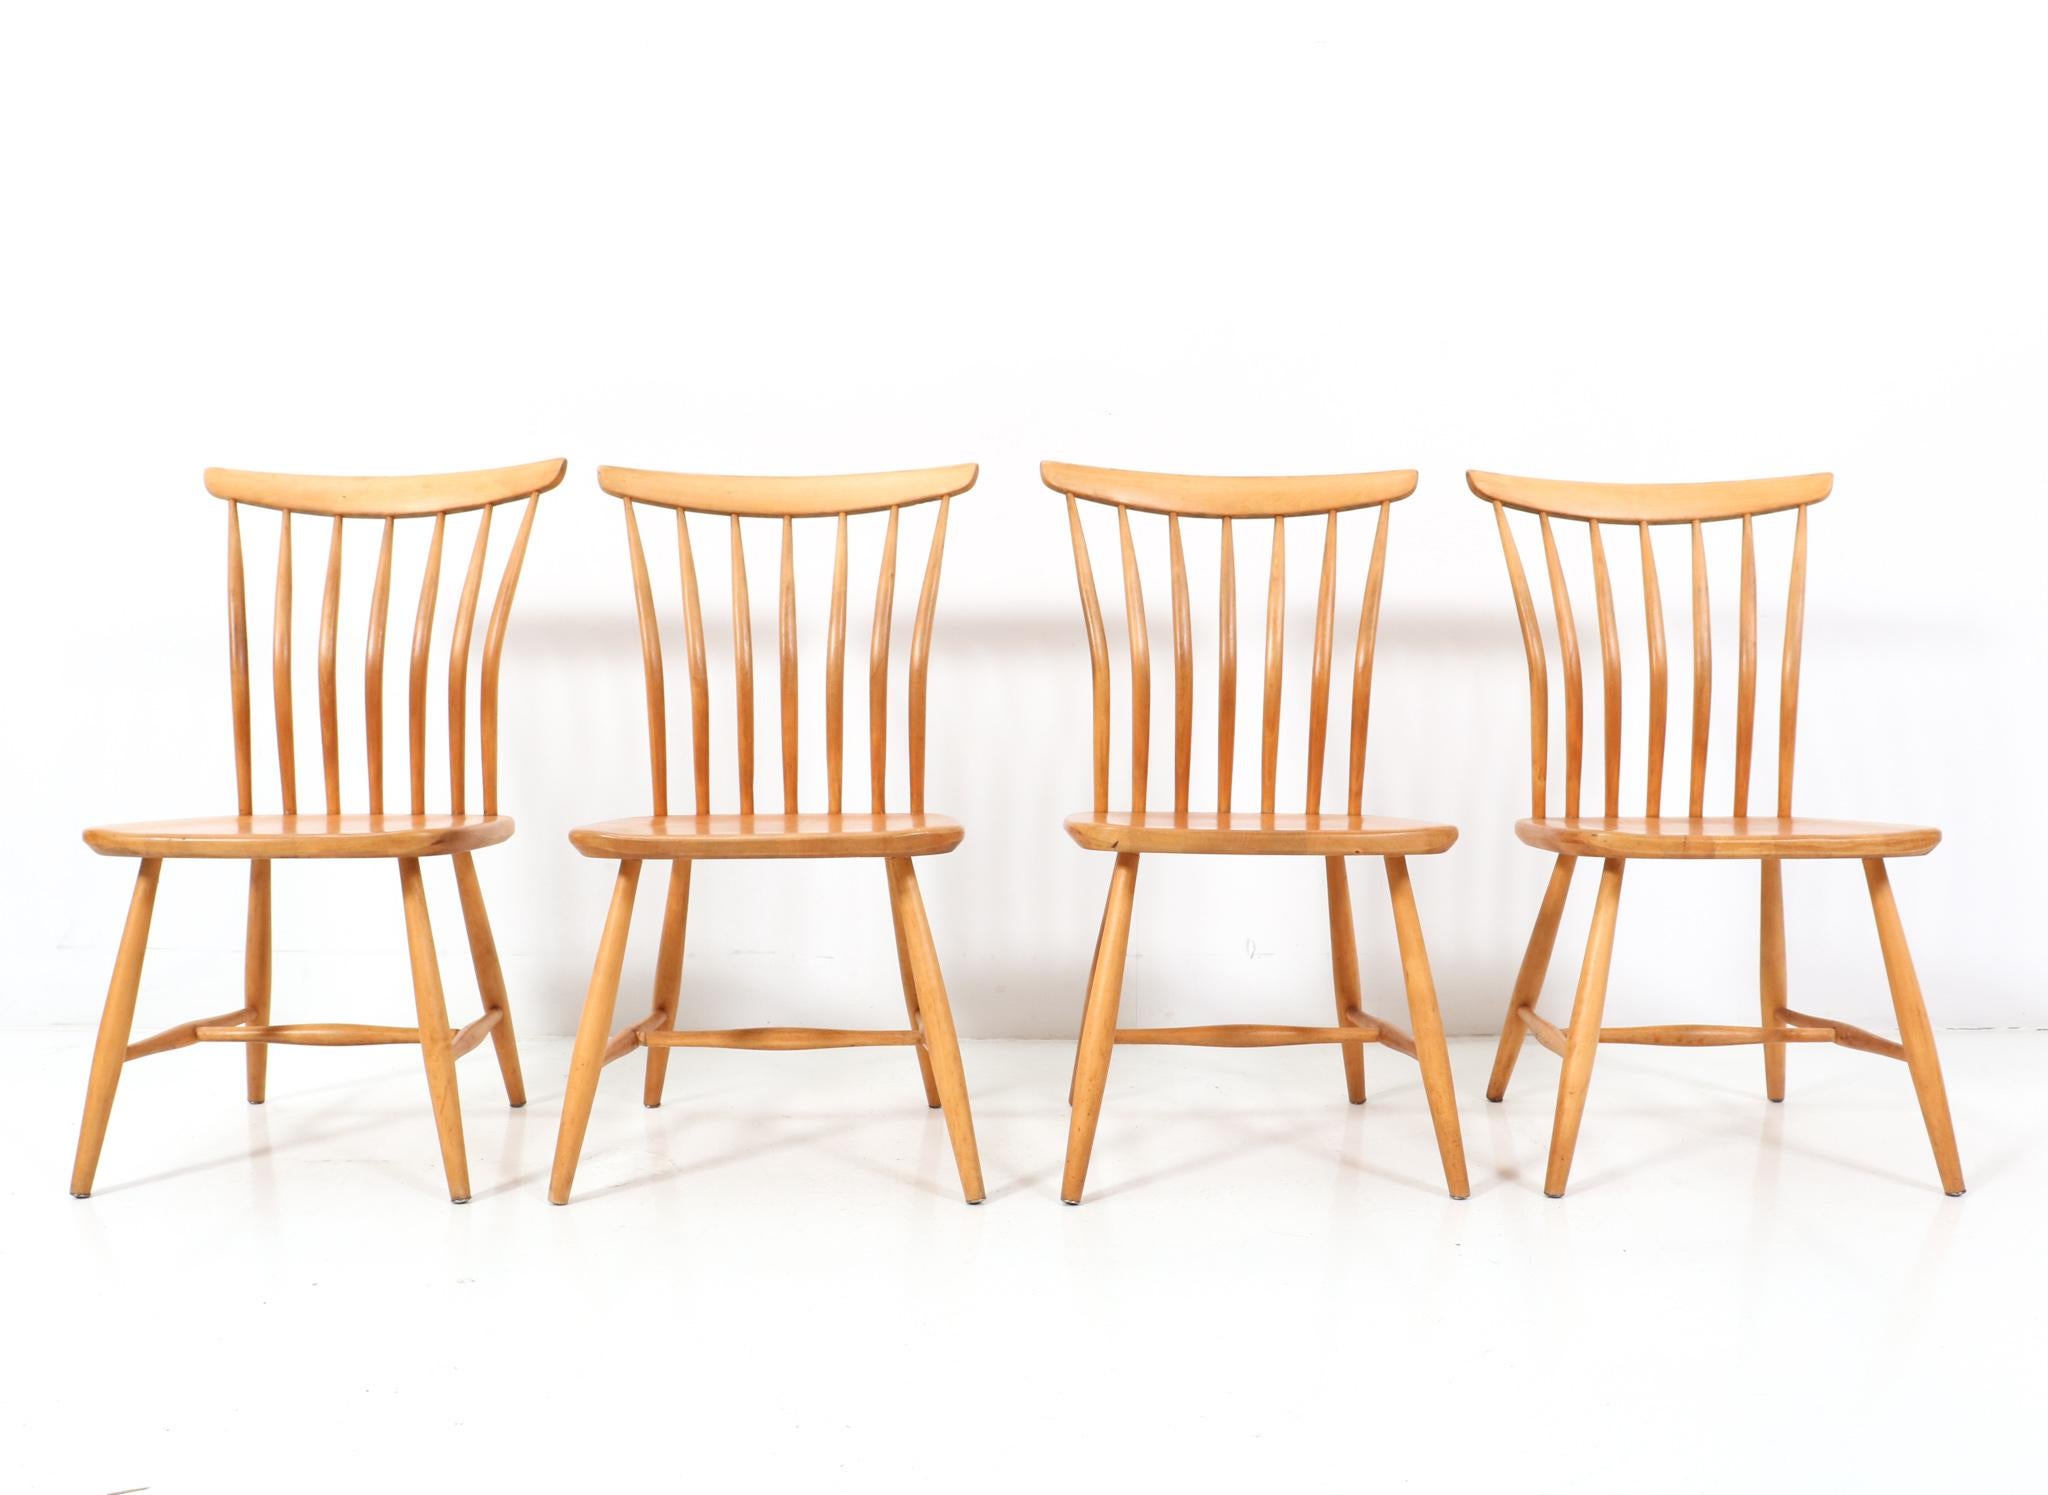 Superbe ensemble de quatre chaises de salle à manger moderne du milieu du siècle dernier.
Design de Bengt Akerblom et Gunnar Eklöf pour Akerblom Stolen.
Un design suédois saisissant des années 1950.
Les cadres en bouleau massif et les quatre